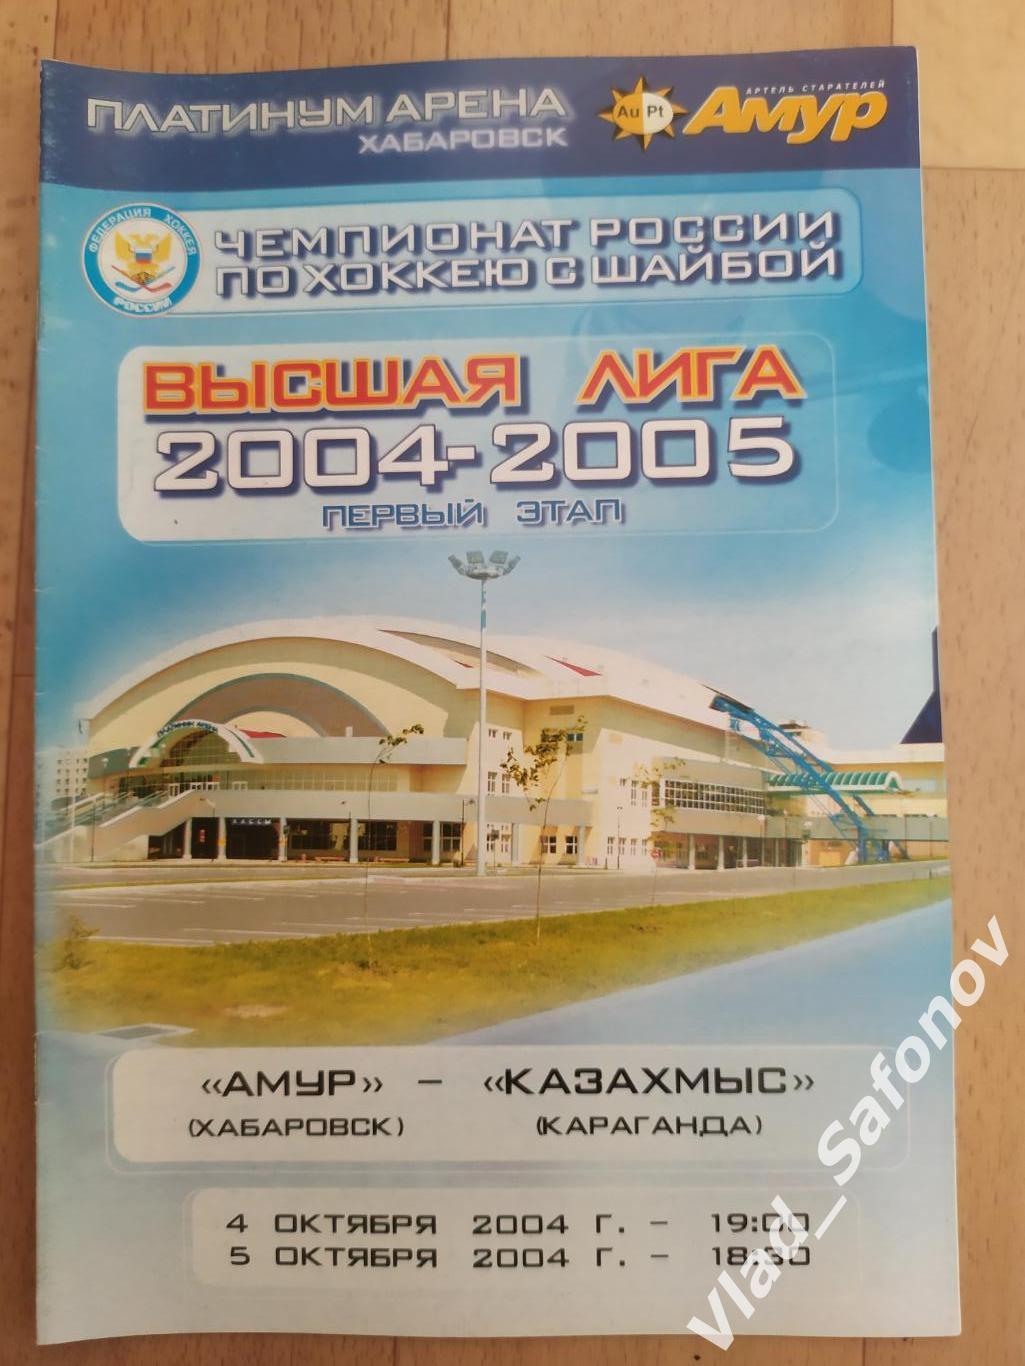 Амур(Хабаровск) - Казахммыс(Караганда). Высшая лига. 04-05/10/2004